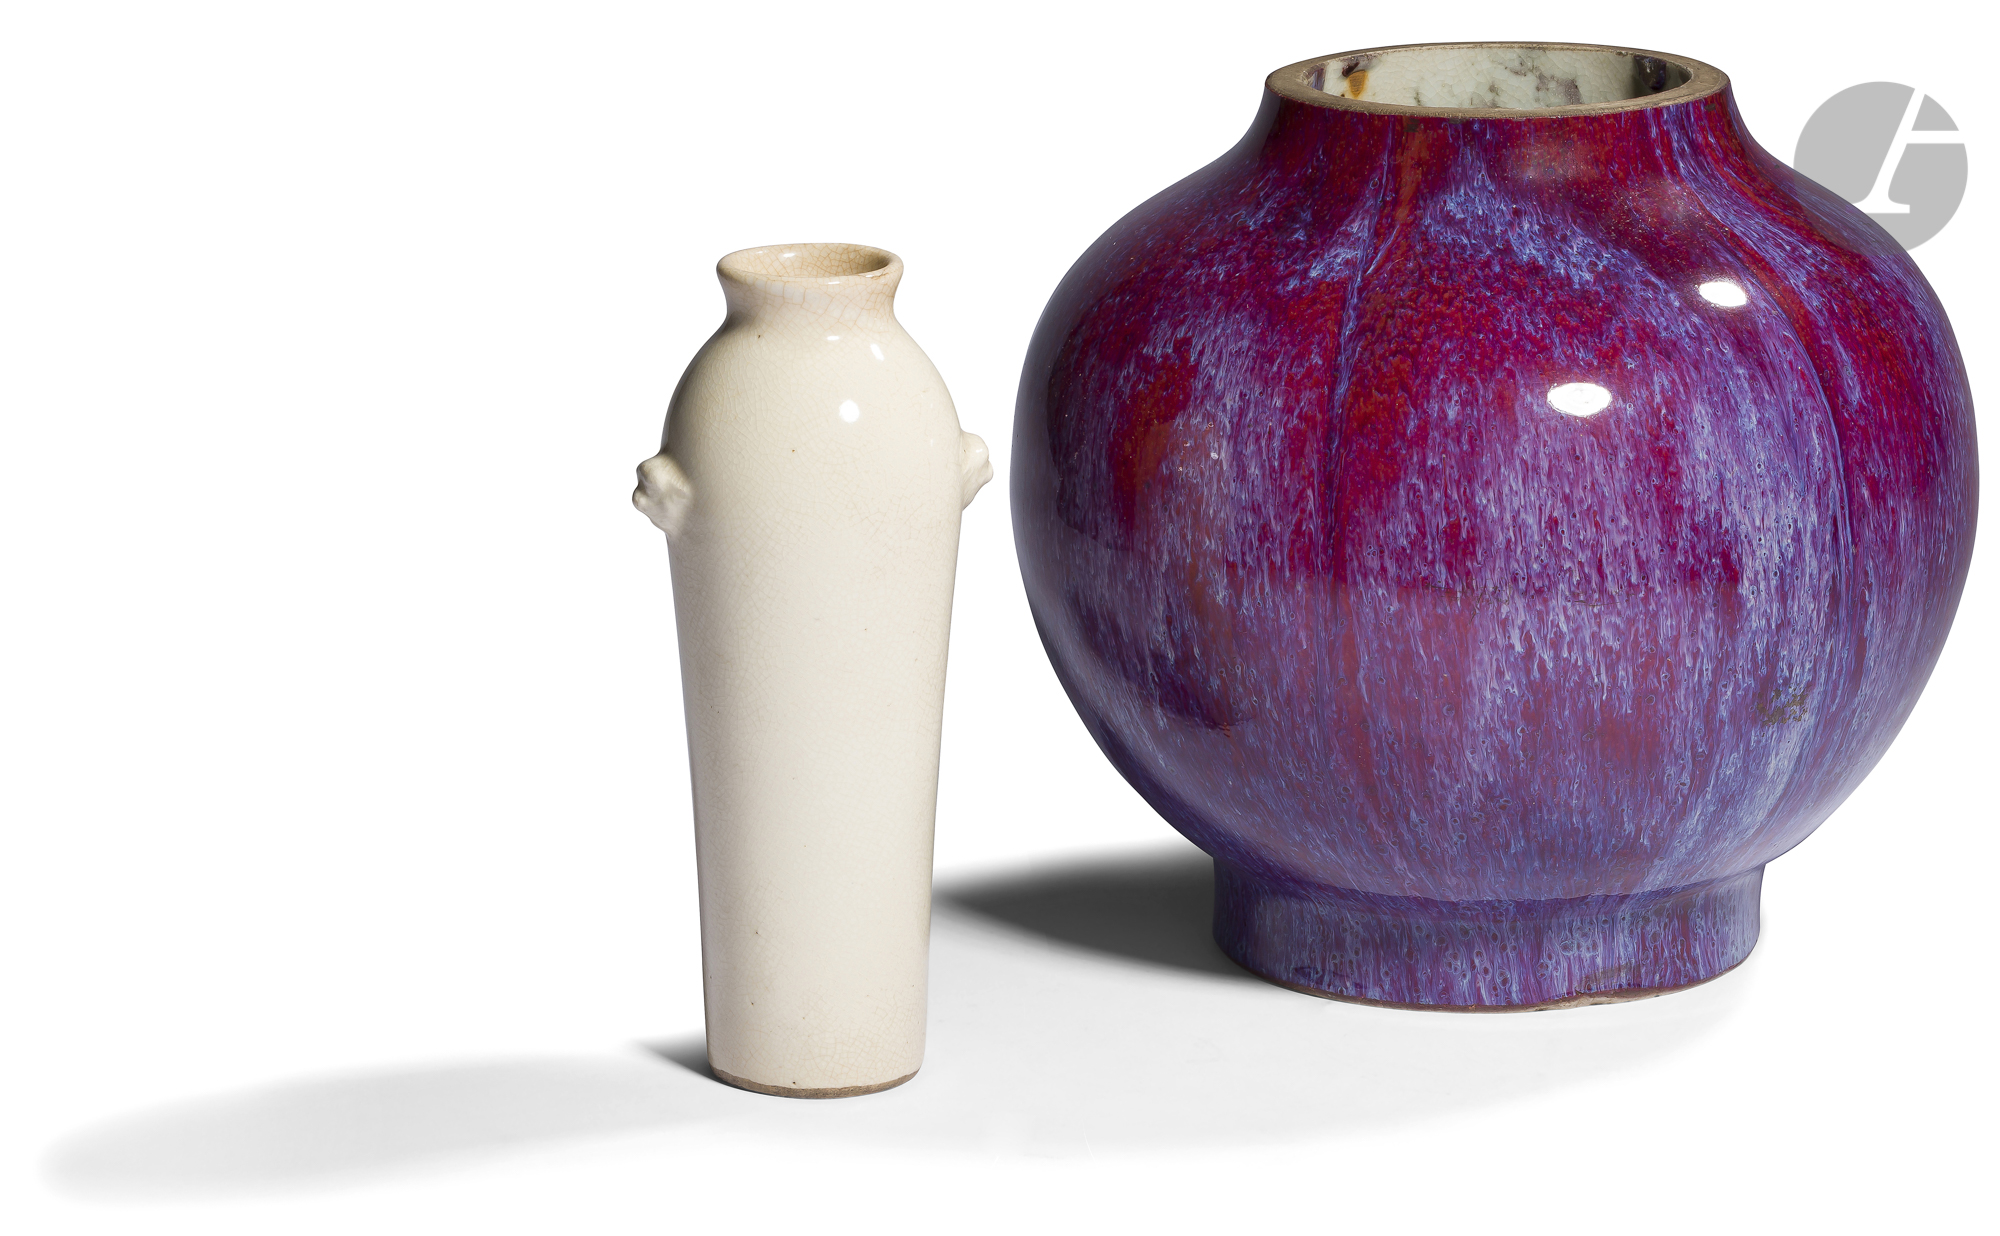 CHINE - XIXe siècle Deux vases en porcelaine, l'un blanc craquelé, à deux anses moulées formant